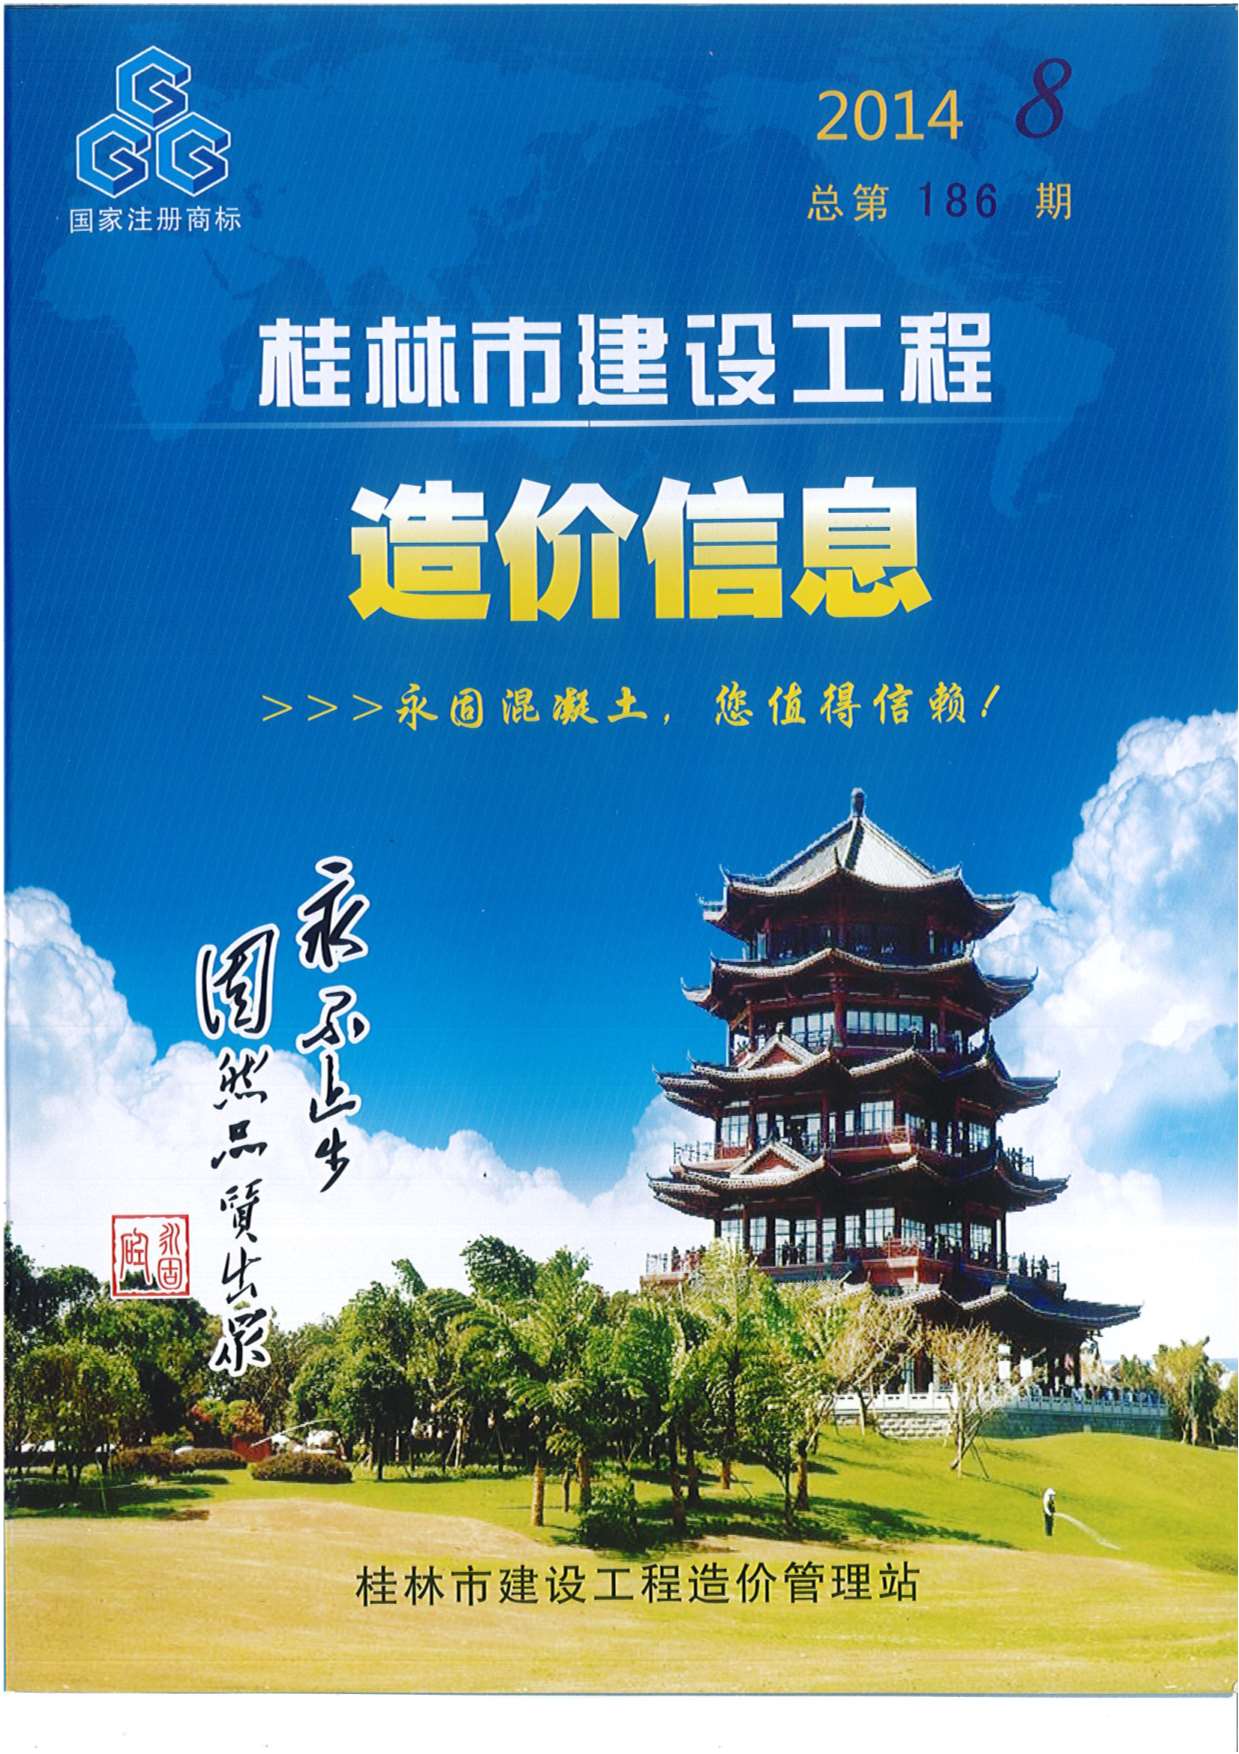 桂林市2014年8月信息价pdf扫描件